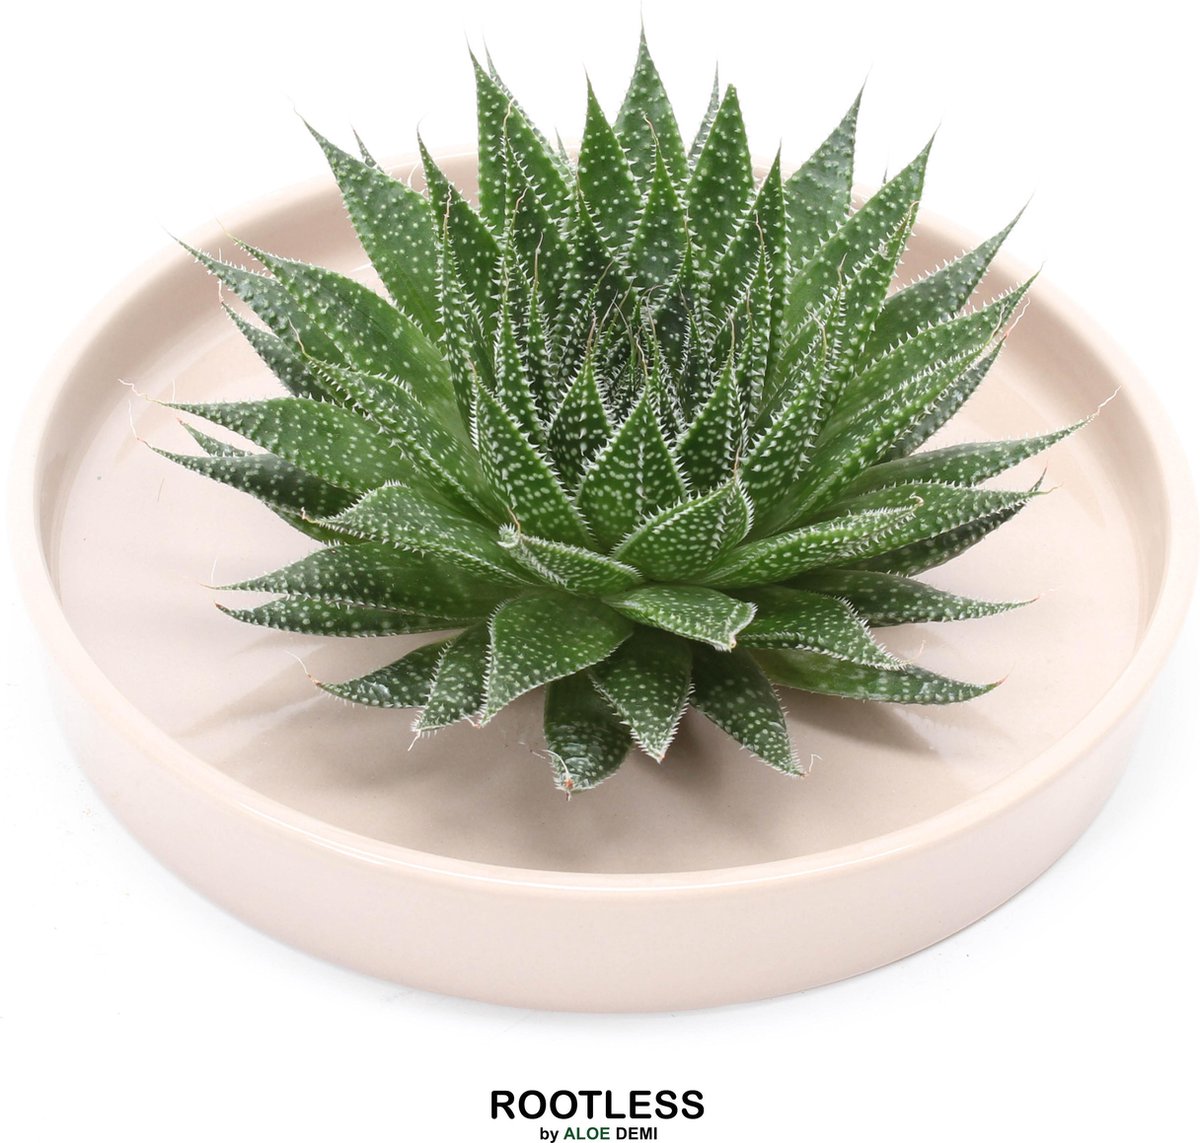 ROOTLESS Aloe - vetplant - taupe pot 20 cm - ZERO water